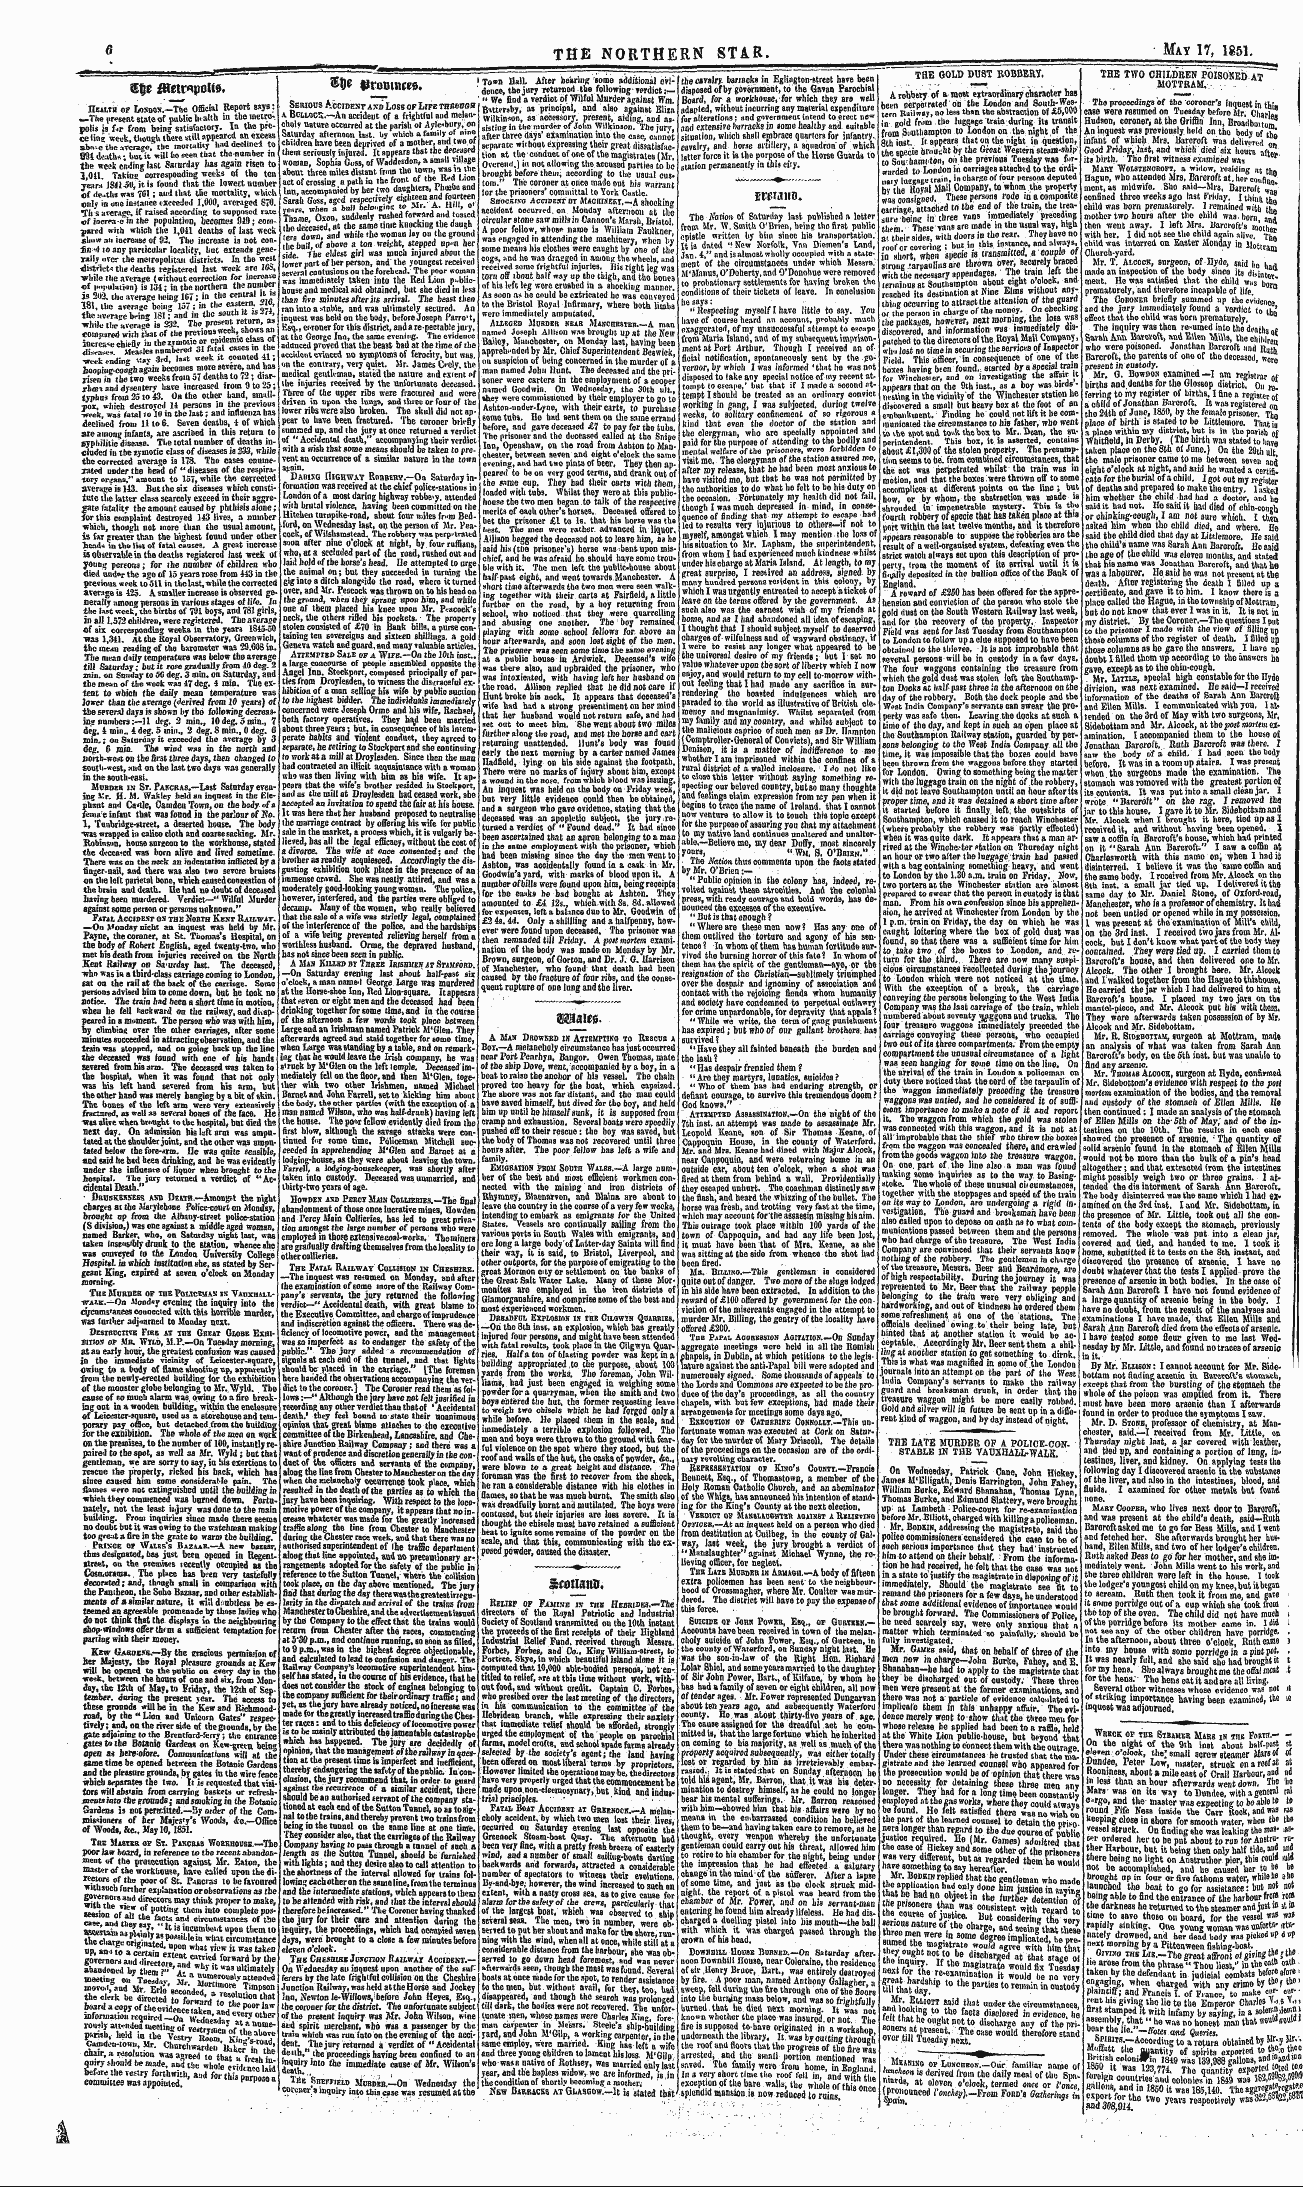 Northern Star (1837-1852): jS F Y, 2nd edition - Sbriotjs Accident Axd Loss Of Life Thimi...